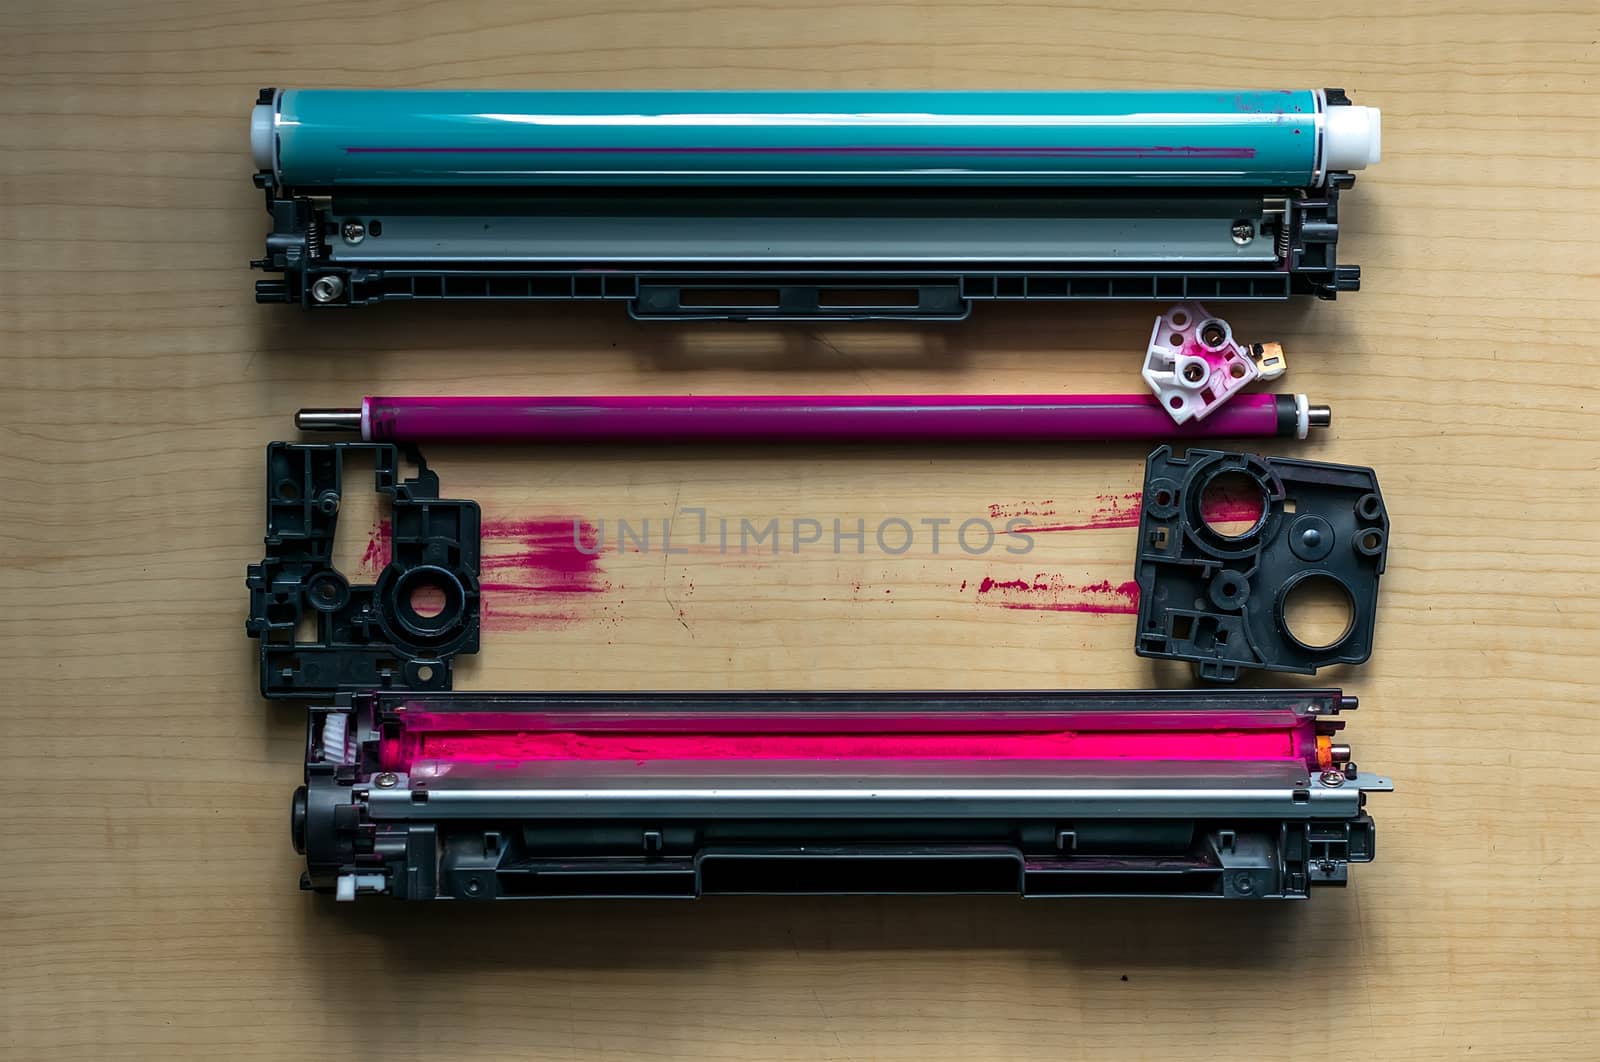 Disassembled laser printer color cartridge by jk3030